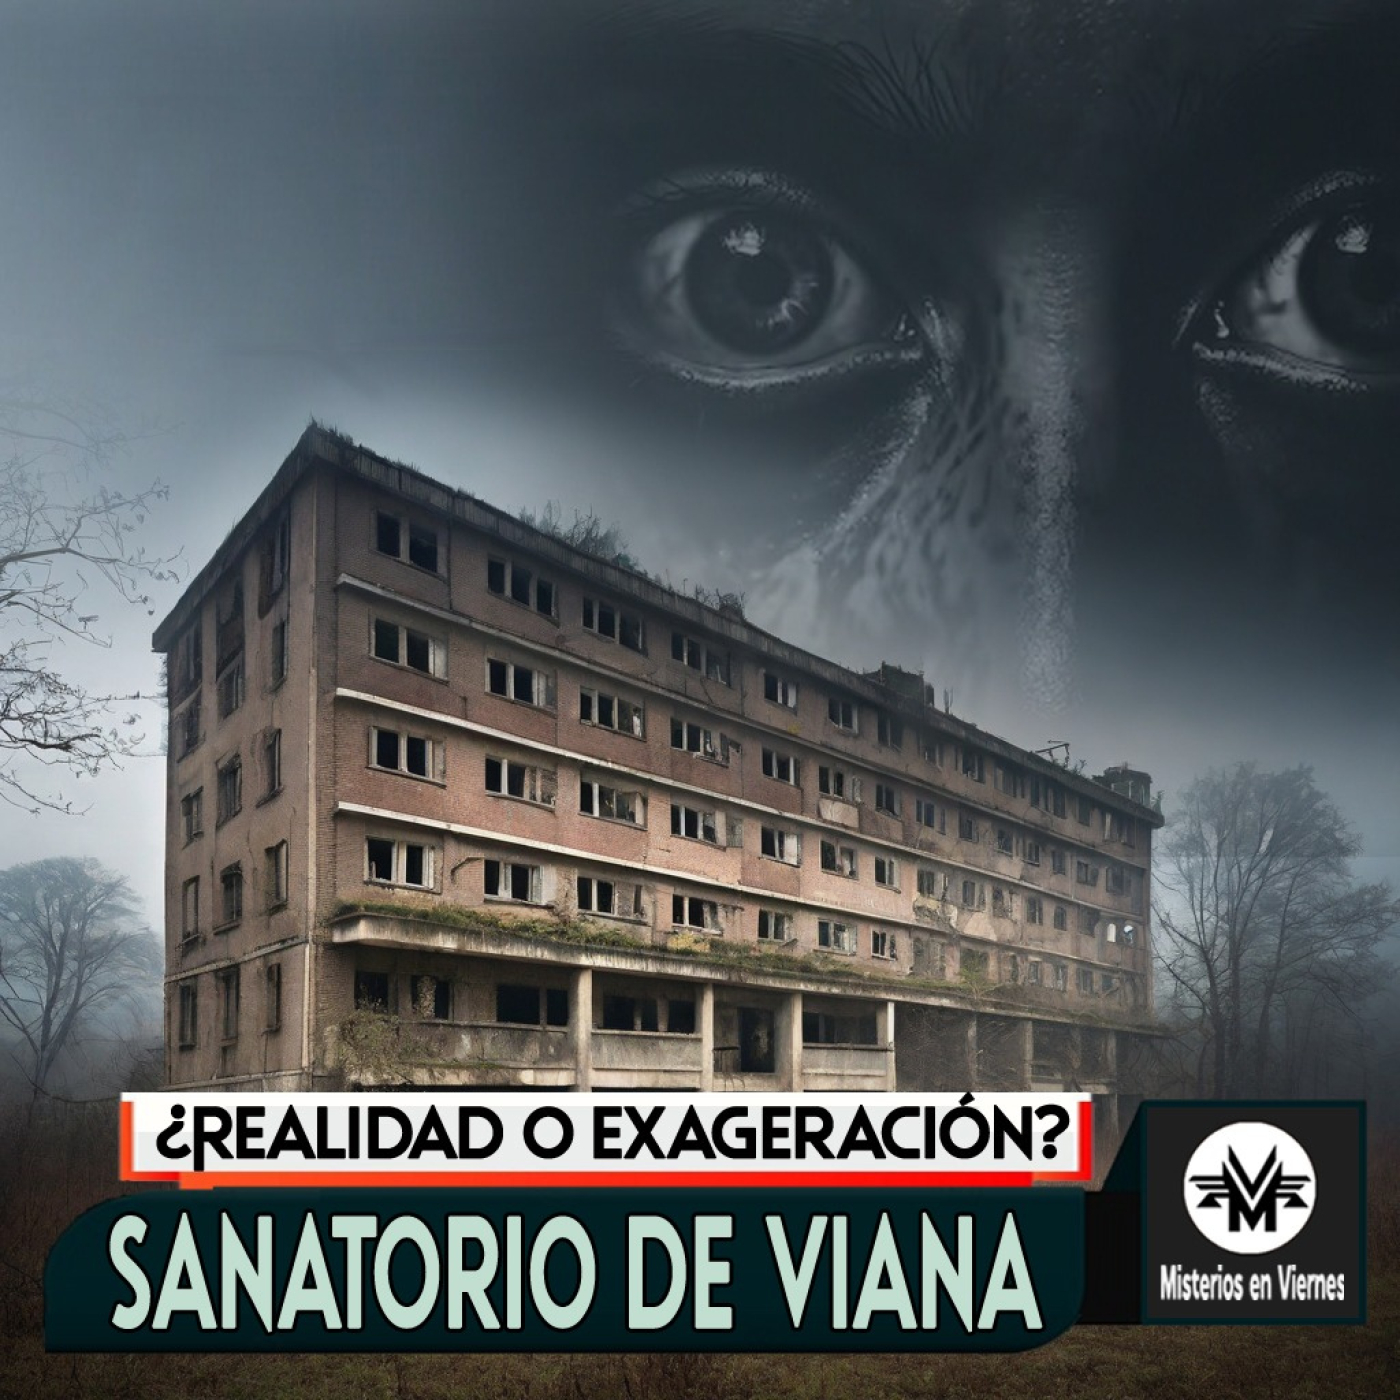 Misterios en Viernes 481 Sanatorio de Viana ¿realidad o exgeración?